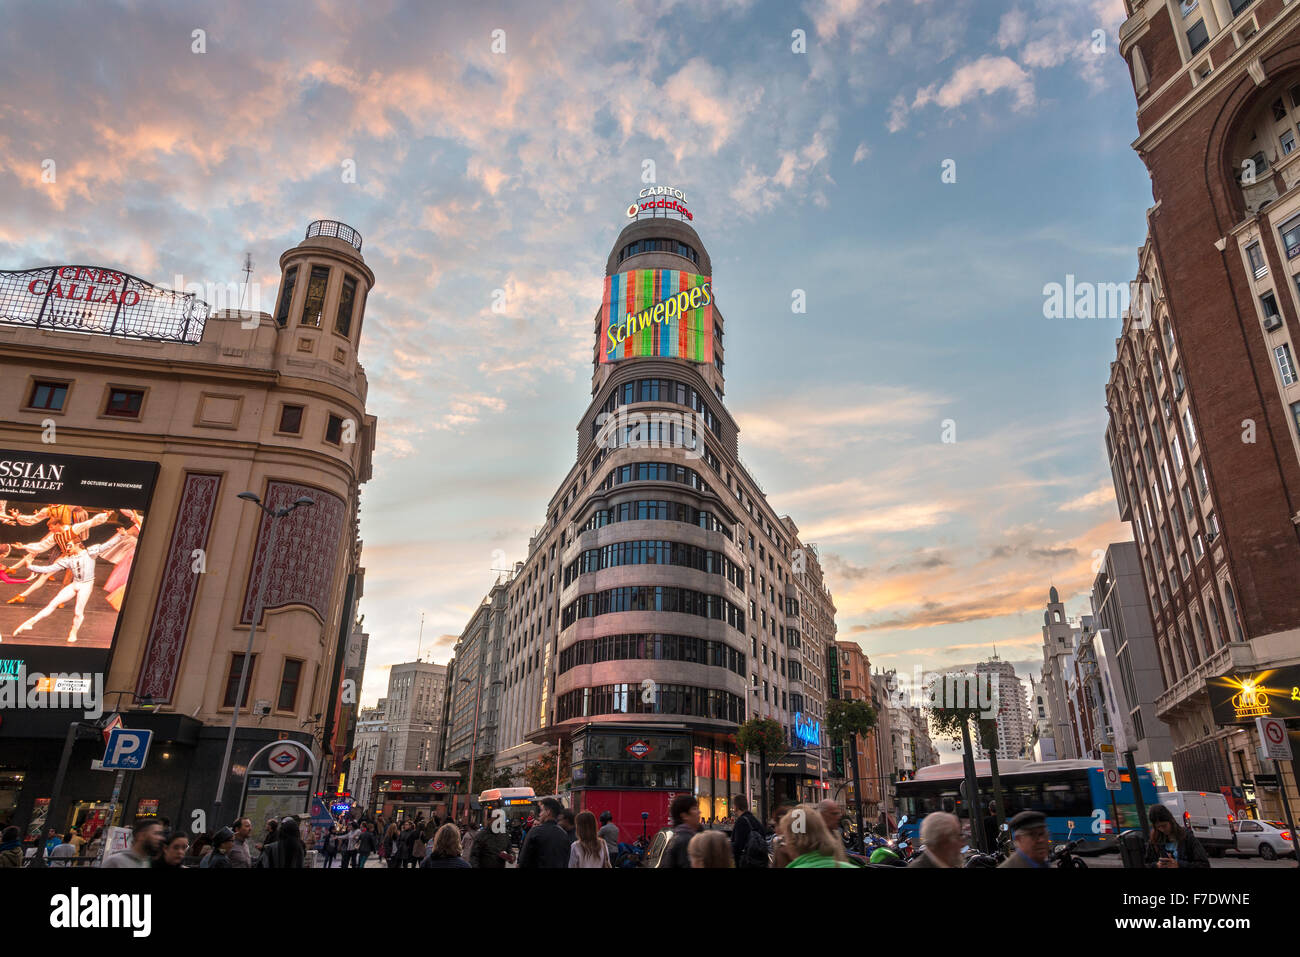 La Gran Via, au coeur de Madrid, dans le quartier commercial, avec des capacités et de charognes Cine Callao en arrière-plan. Madrid, Espagne Banque D'Images